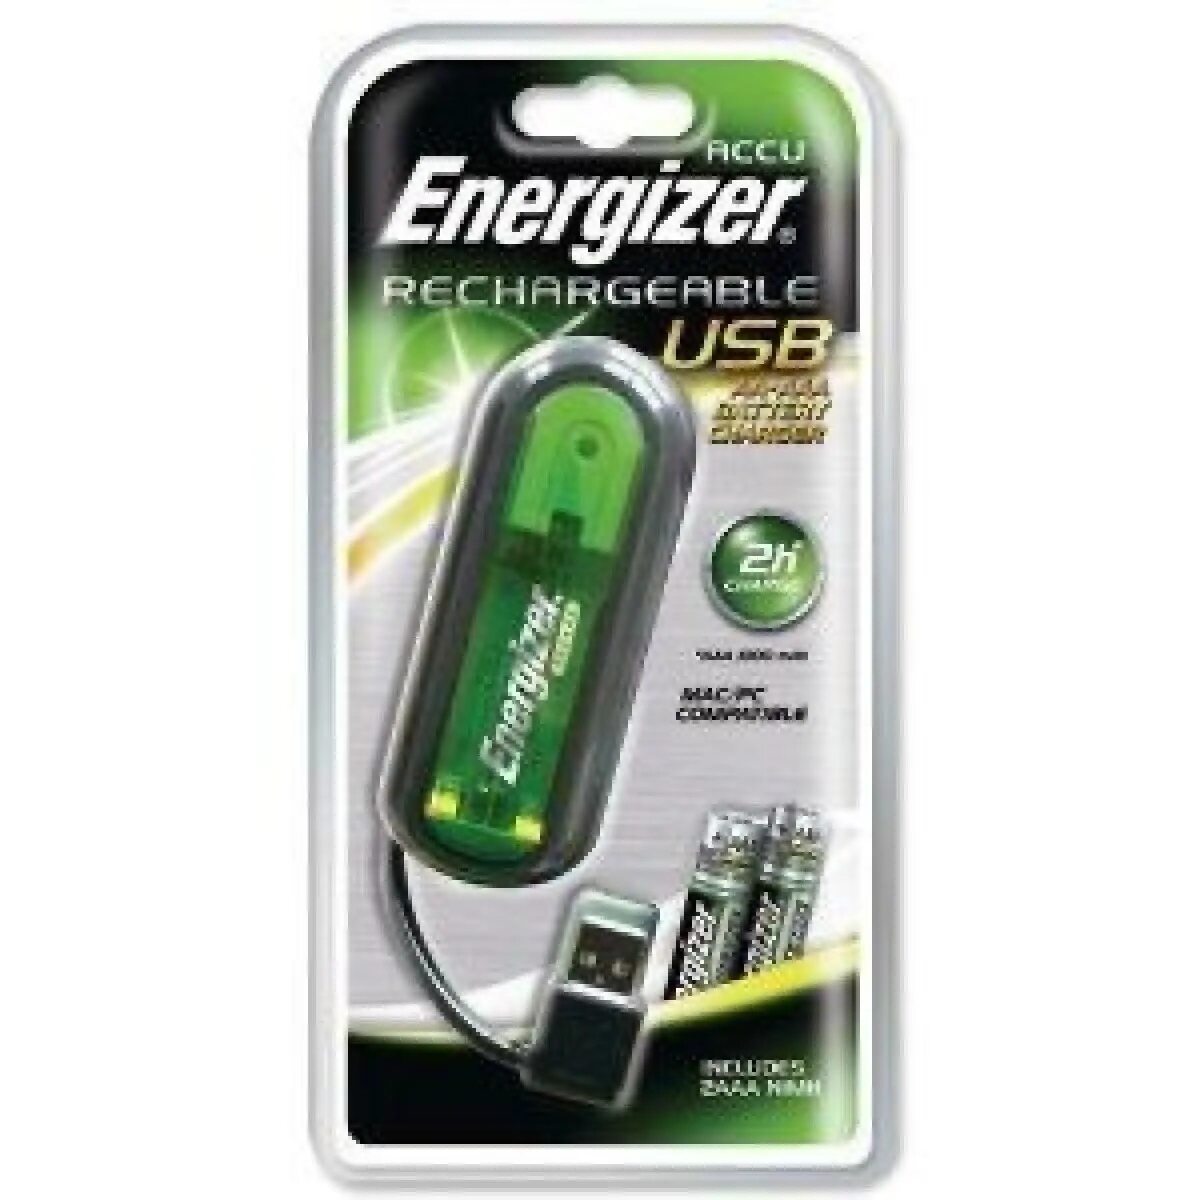 Зарядное устройство Energizer NIMH Battery Charger. Ni MH Energizer зарядное устройство. Energizer зарядное устройство USB. Energizer Rechargeable зарядки. Зарядное устройство energizer